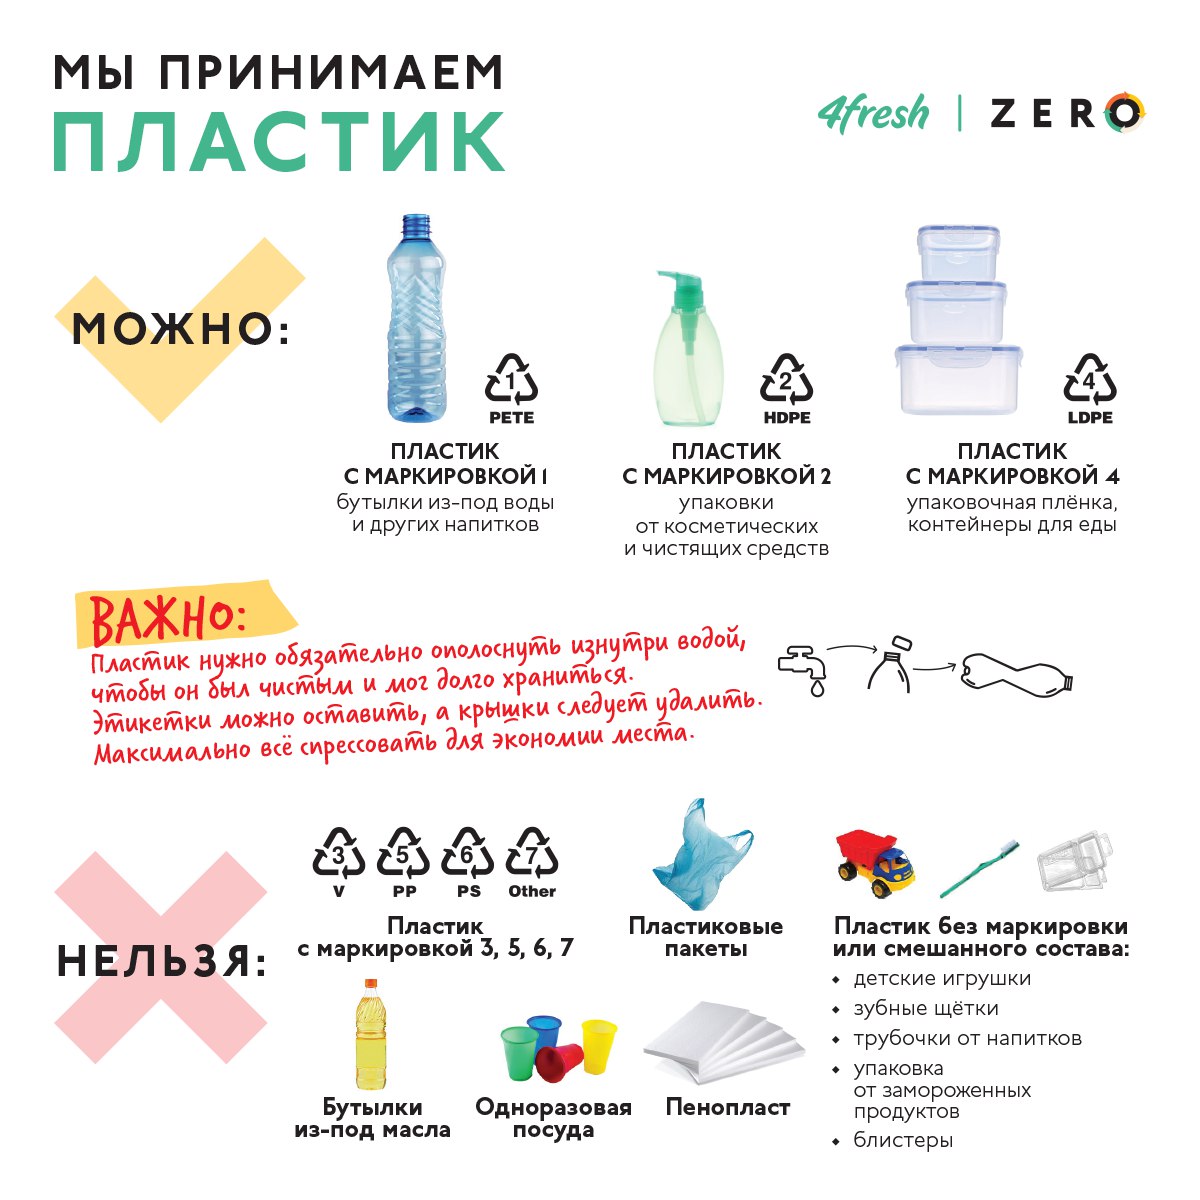 6 мифов о вреде пластмассовых бутылок